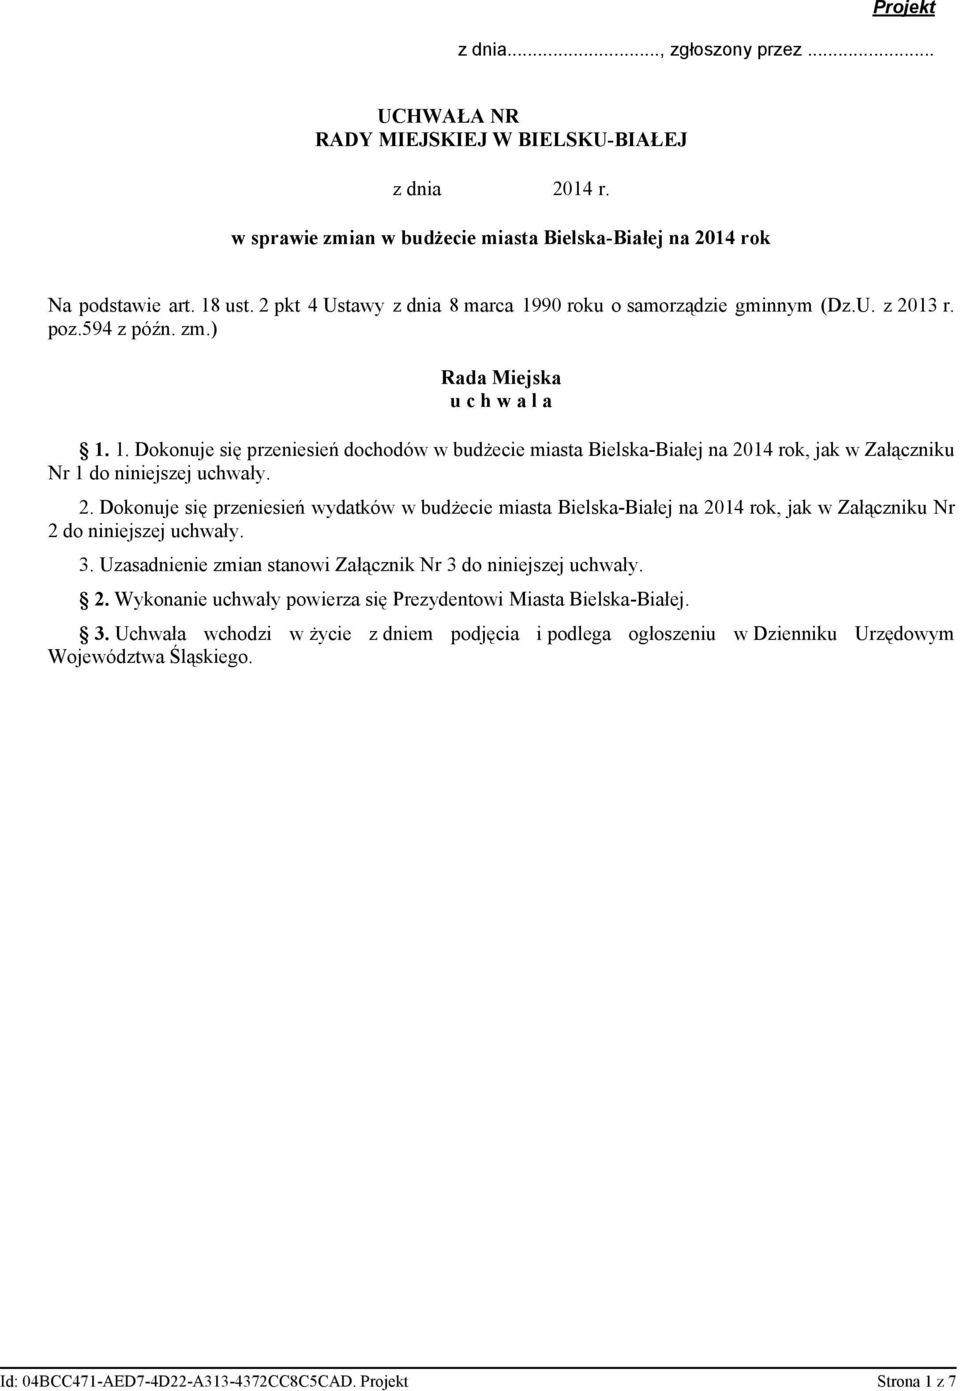 2. Dokonuje się przeniesień wydatków w budżecie miasta Bielska-Białej na 2014 rok, jak w Załączniku Nr 2 do niniejszej uchwały. 3. Uzasadnienie zmian stanowi Załącznik Nr 3 do niniejszej uchwały. 2. Wykonanie uchwały powierza się Prezydentowi Miasta Bielska-Białej.